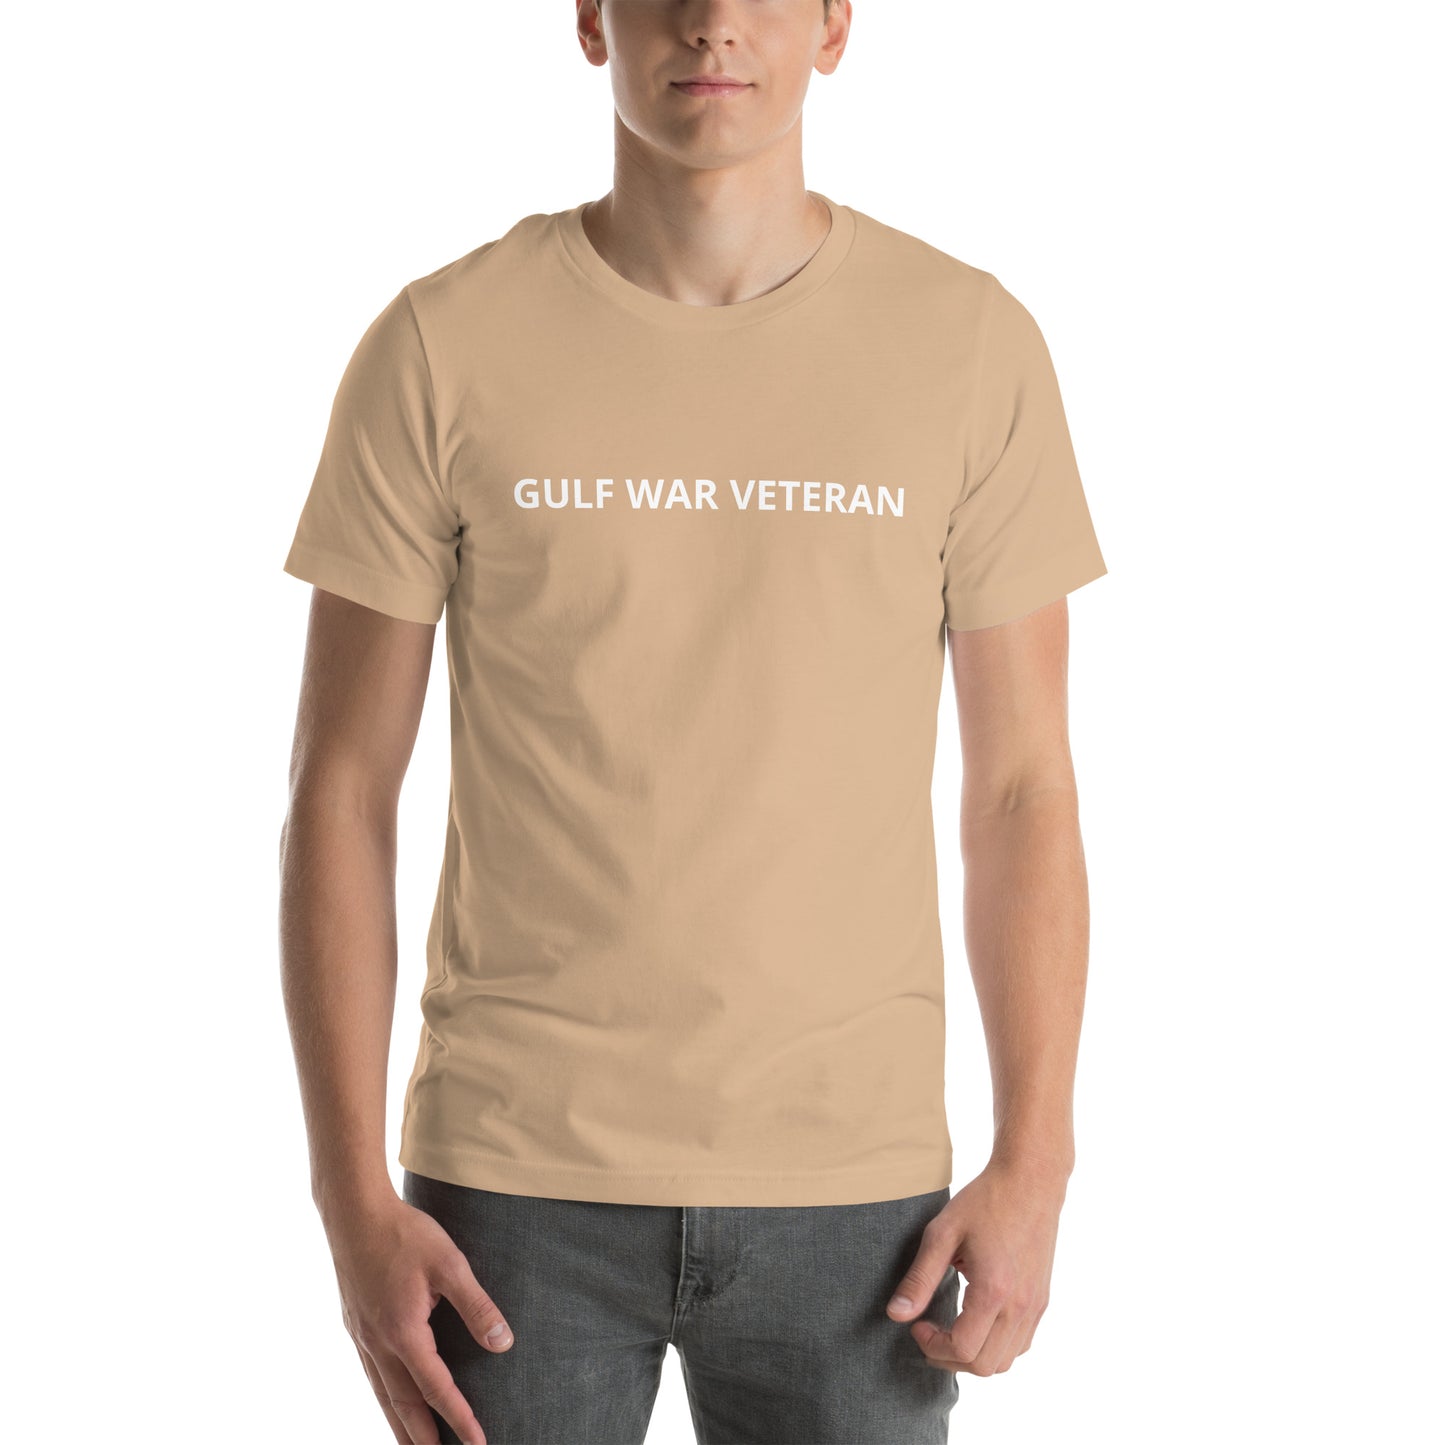 GULF WAR VETERAN Unisex t-shirt